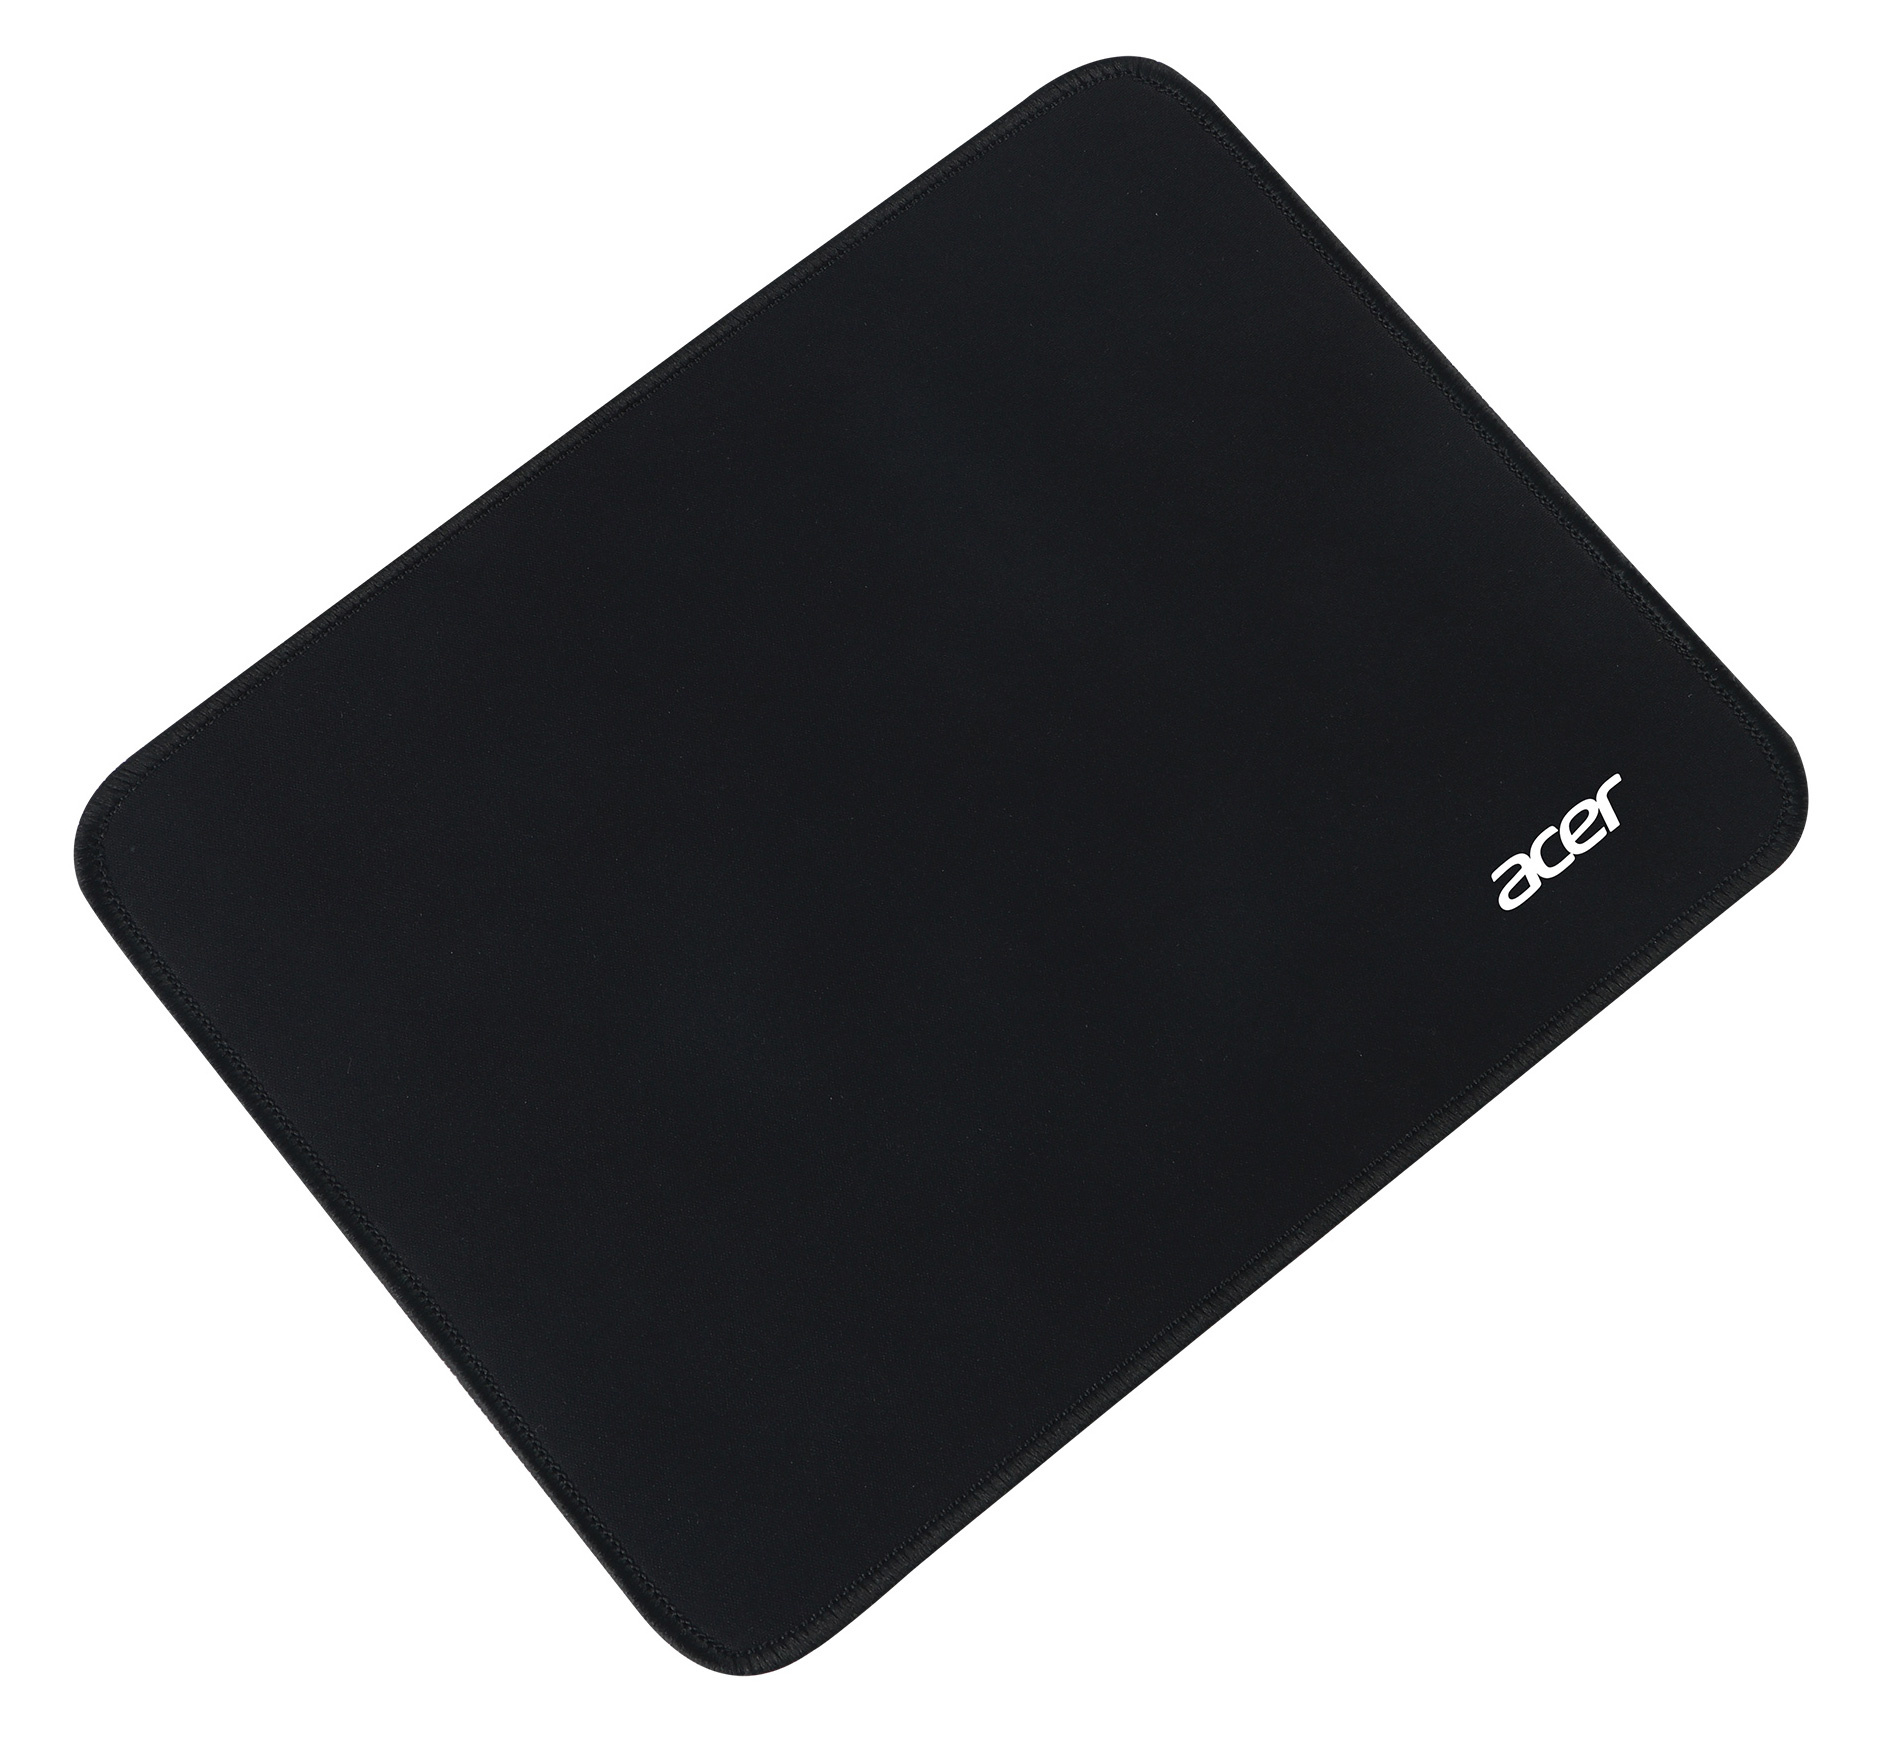 Коврик для мыши Acer OMP210 Мини, черный 